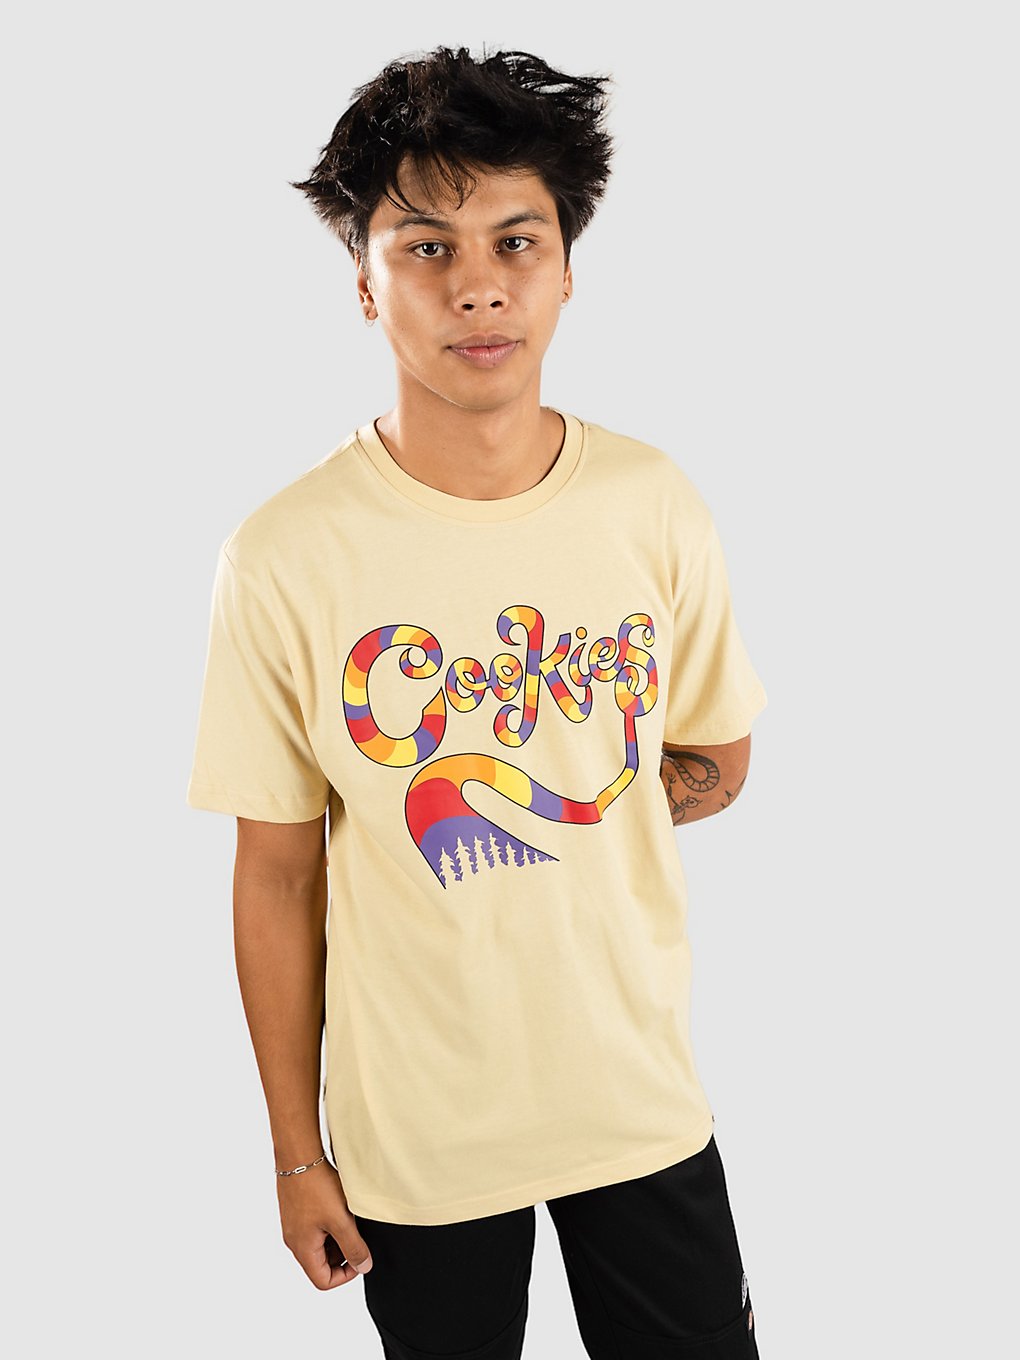 Cookies Cookiehill Gang T-Shirt